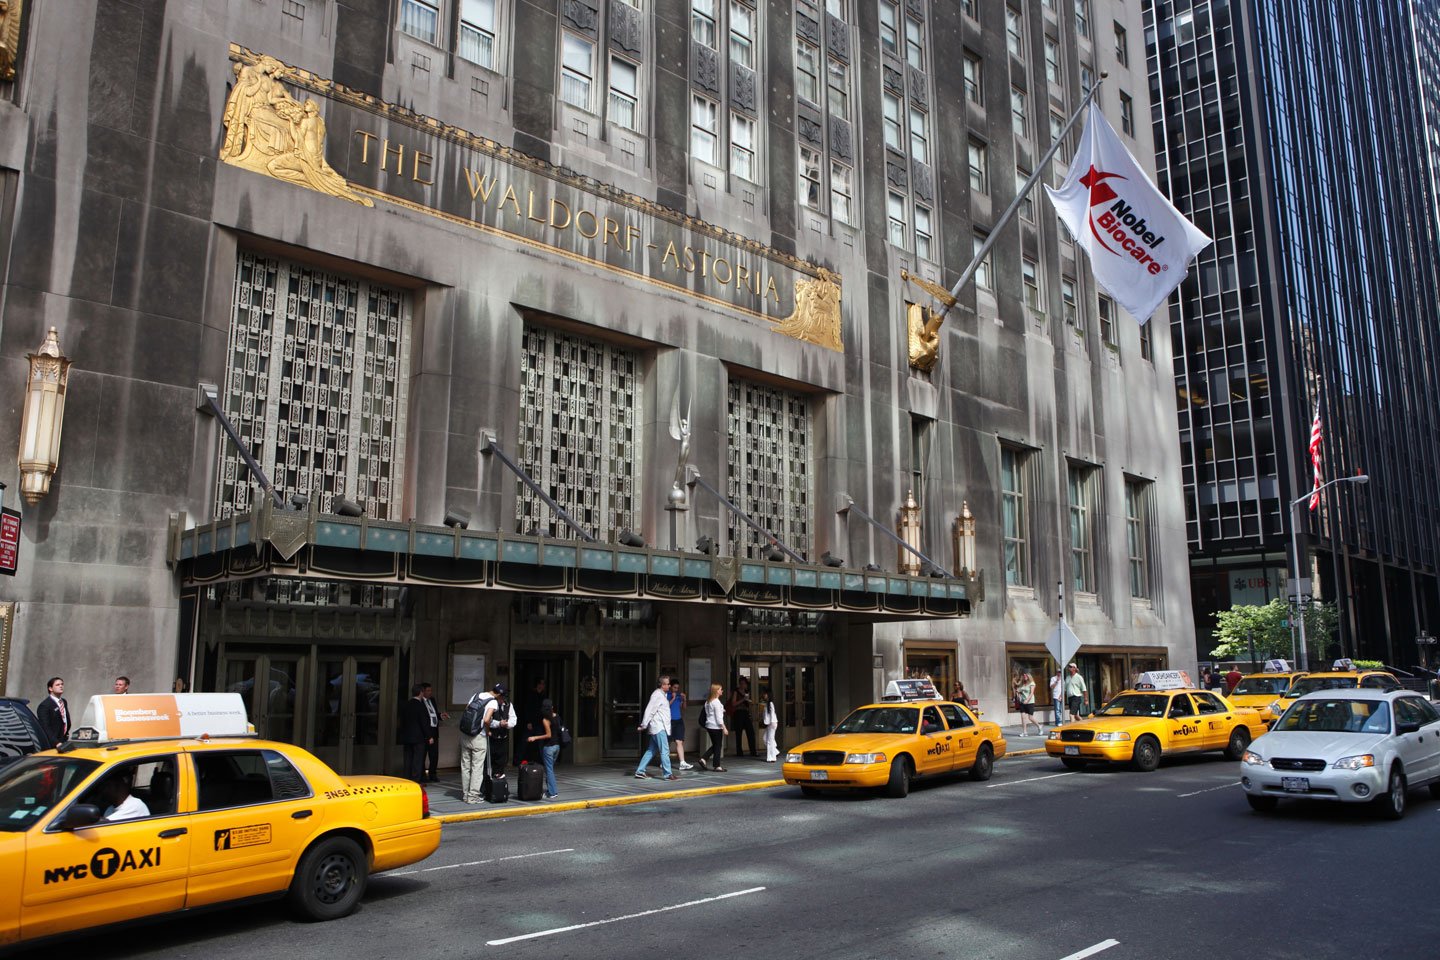 Η κινεζική Anbang Insurance Group αγόρασε το Waldorf Astoria